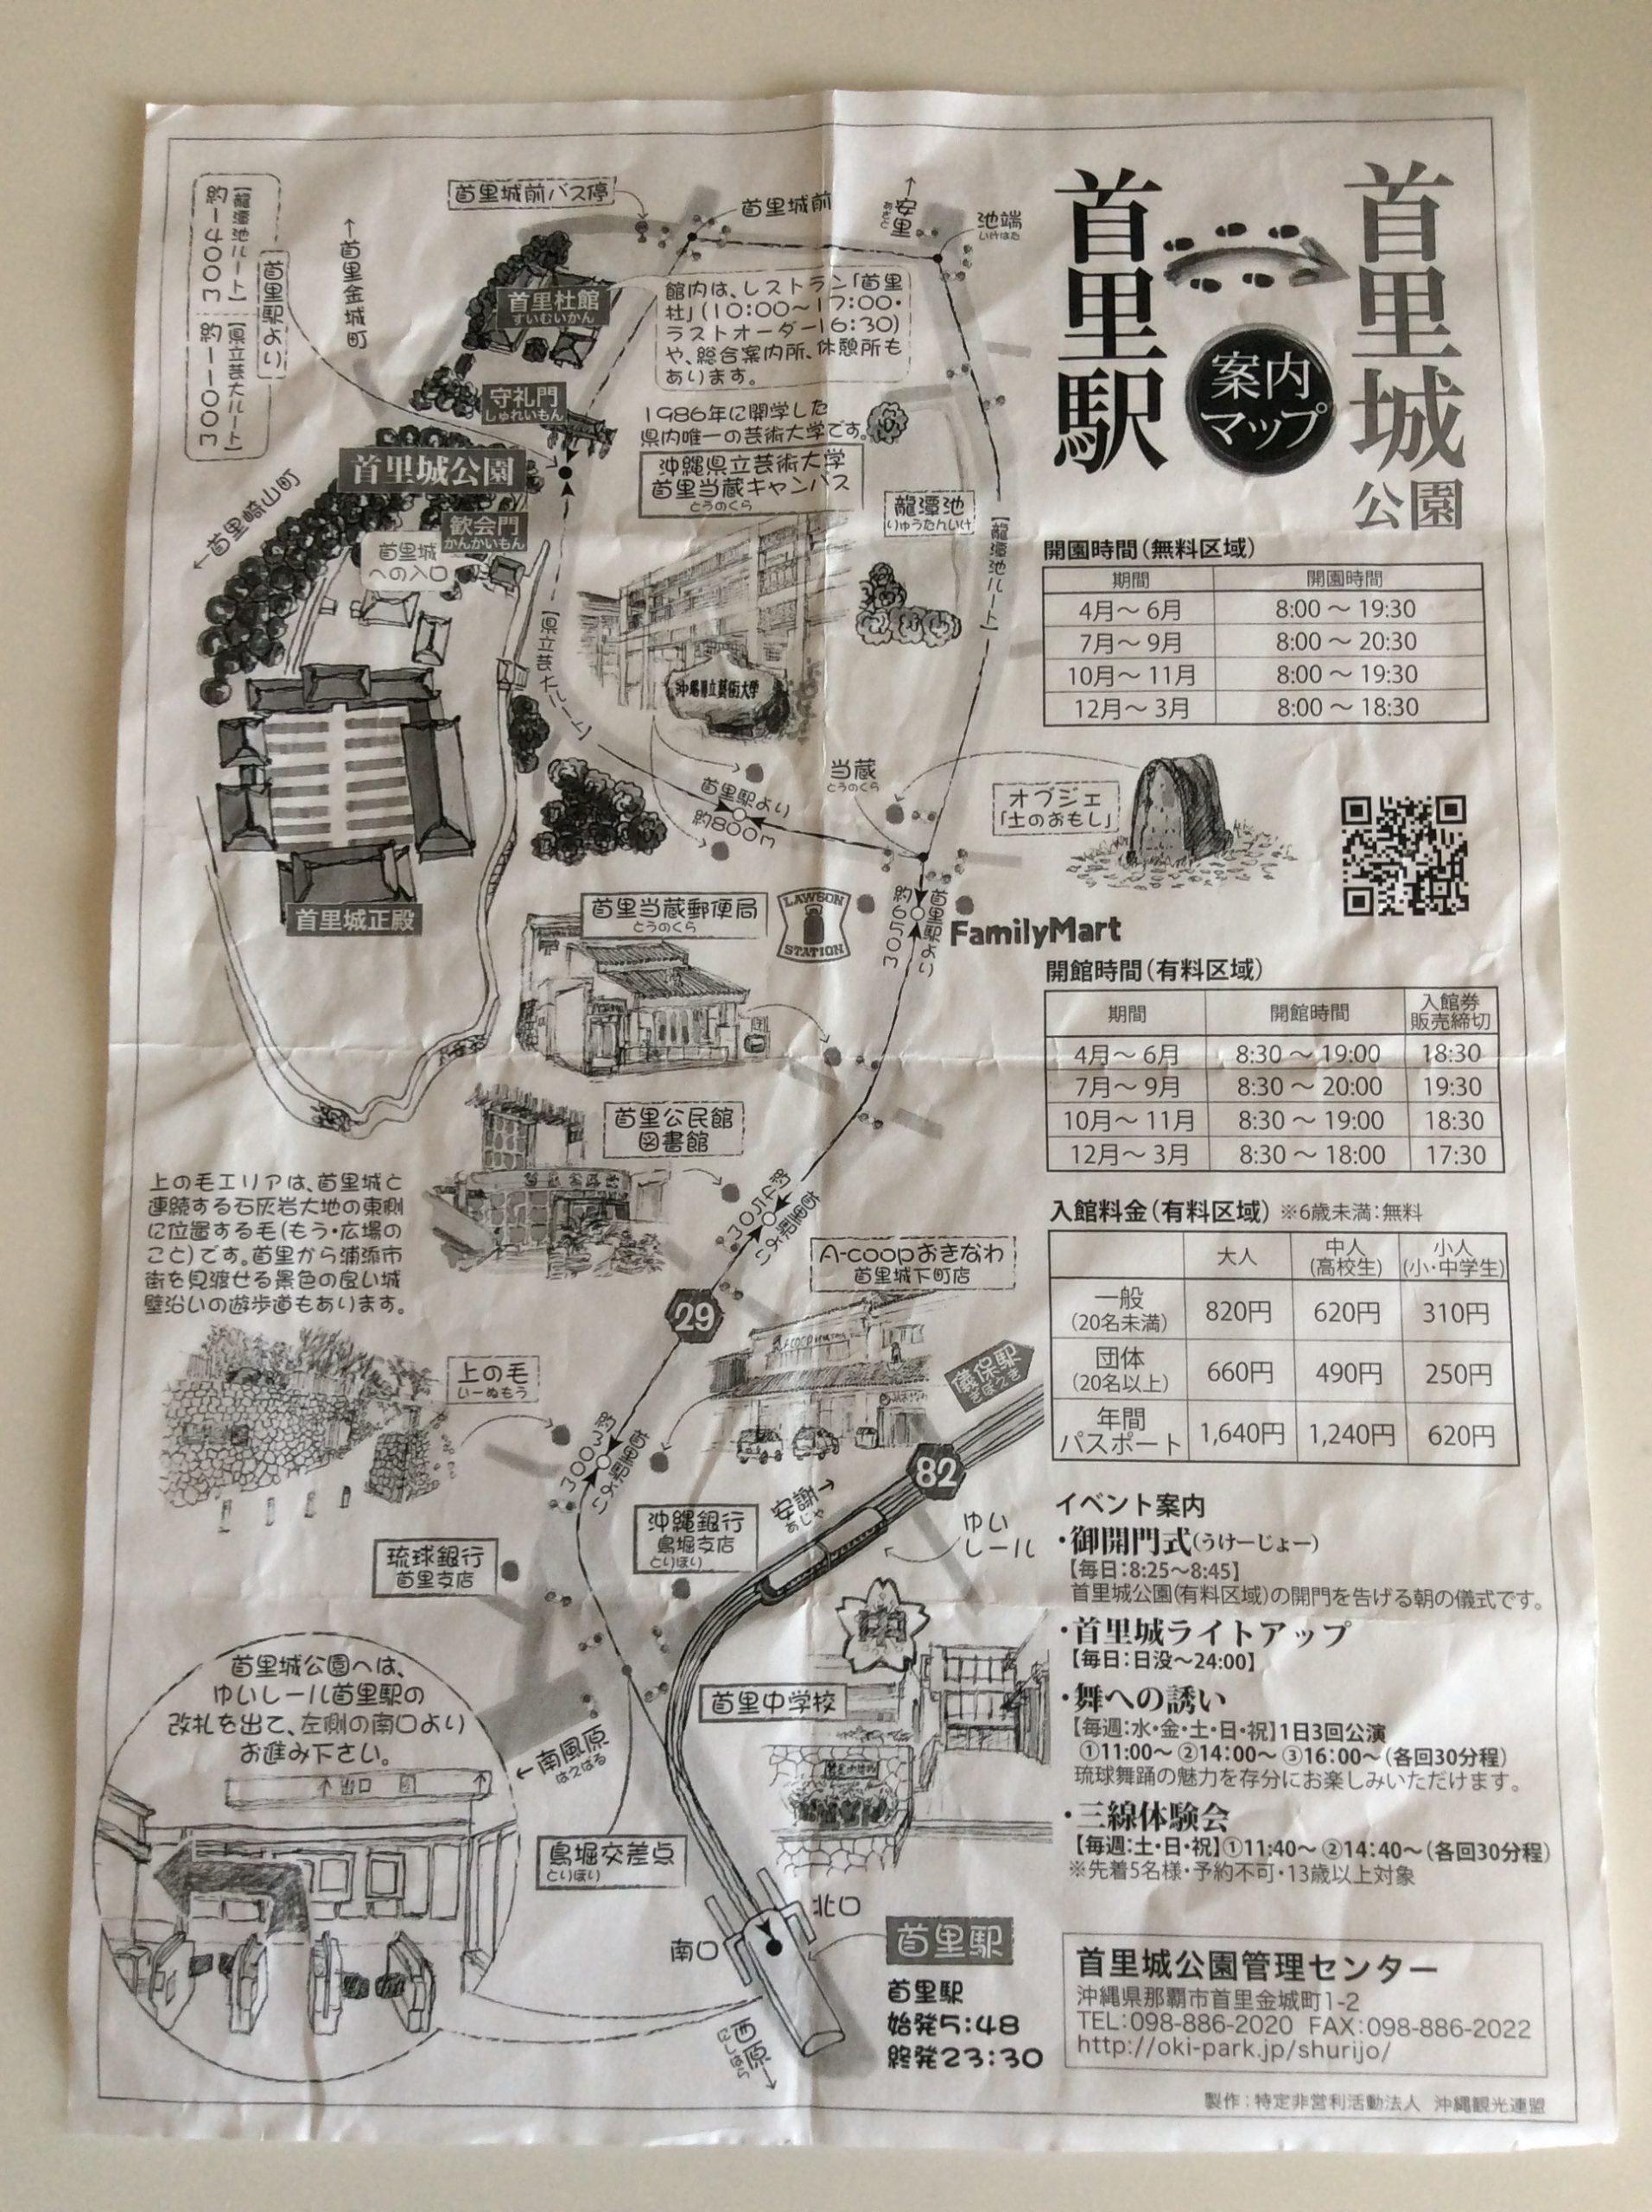 首里駅でもらった首里城への案内地図